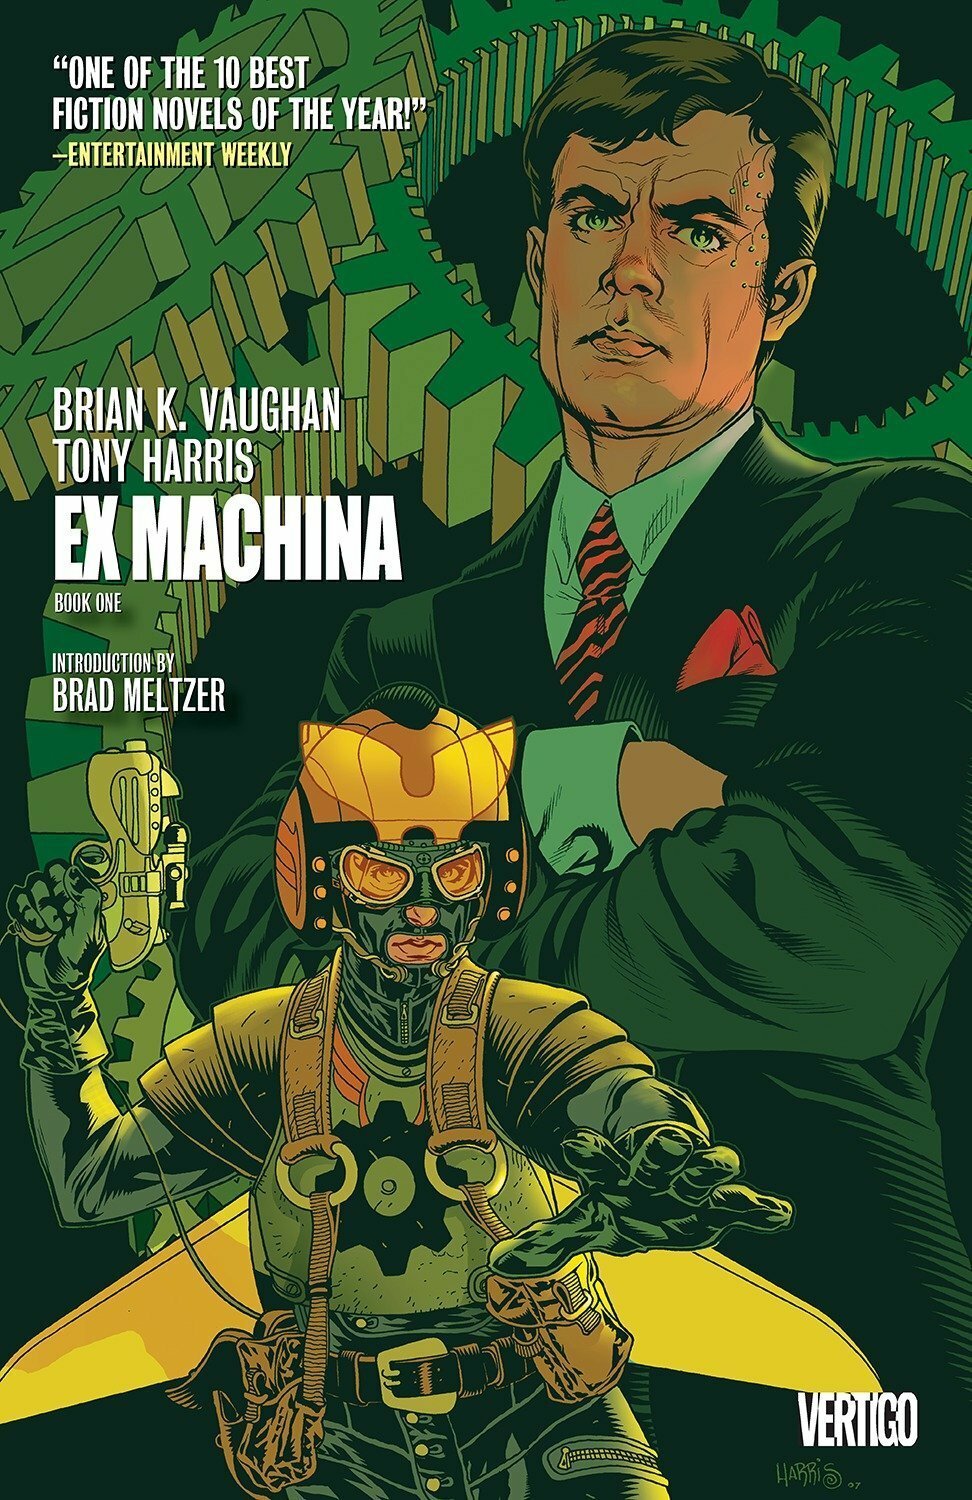 La cover del fumetto di Ex Machina presenta un verde dominante e due personaggi